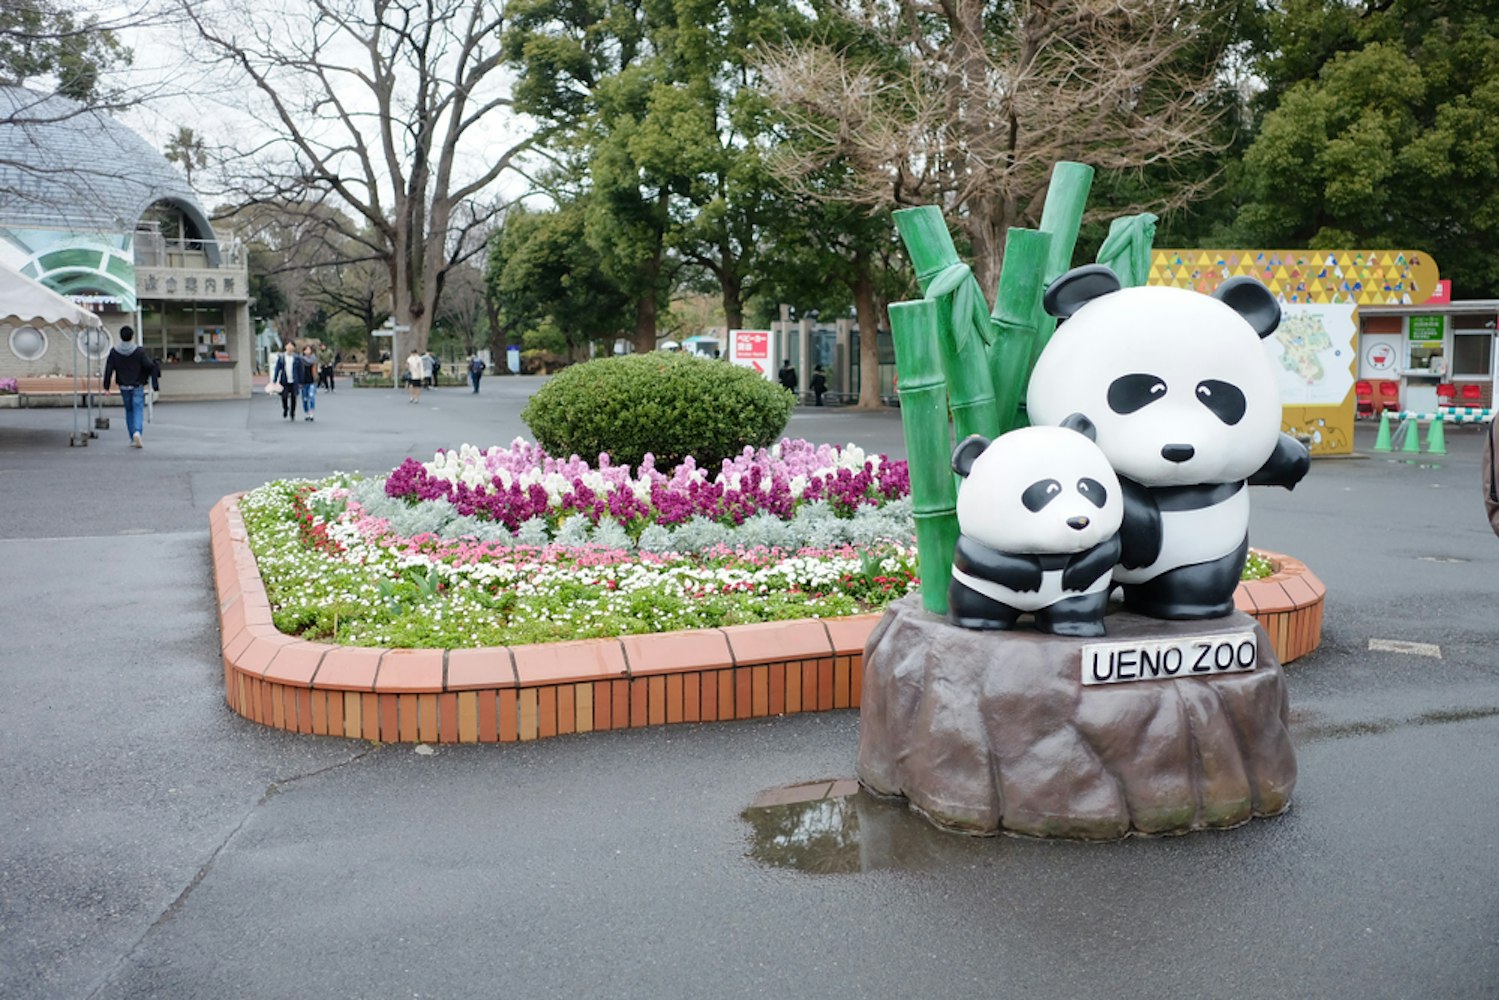 Panda statue at the entrance to Ueno Zoo at Tokyo.